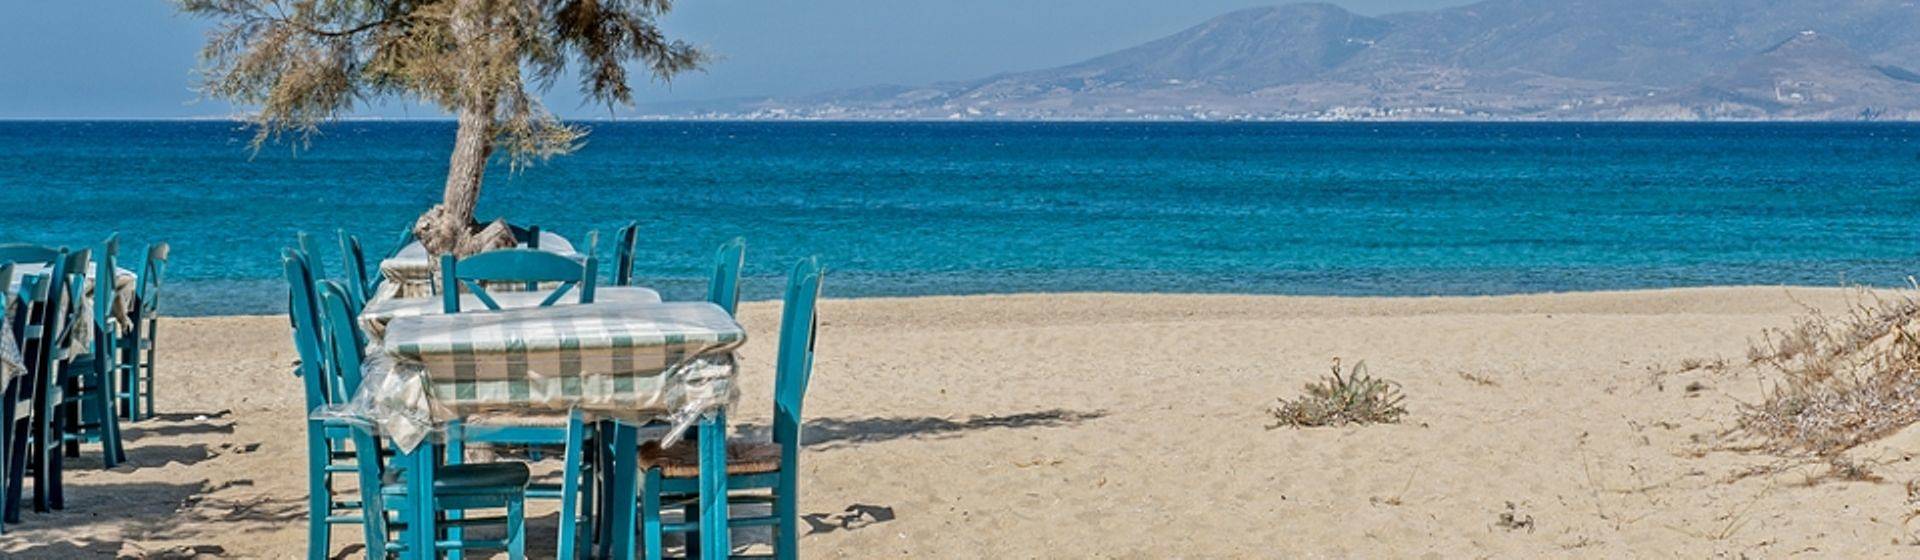 Holidays to Naxos Image